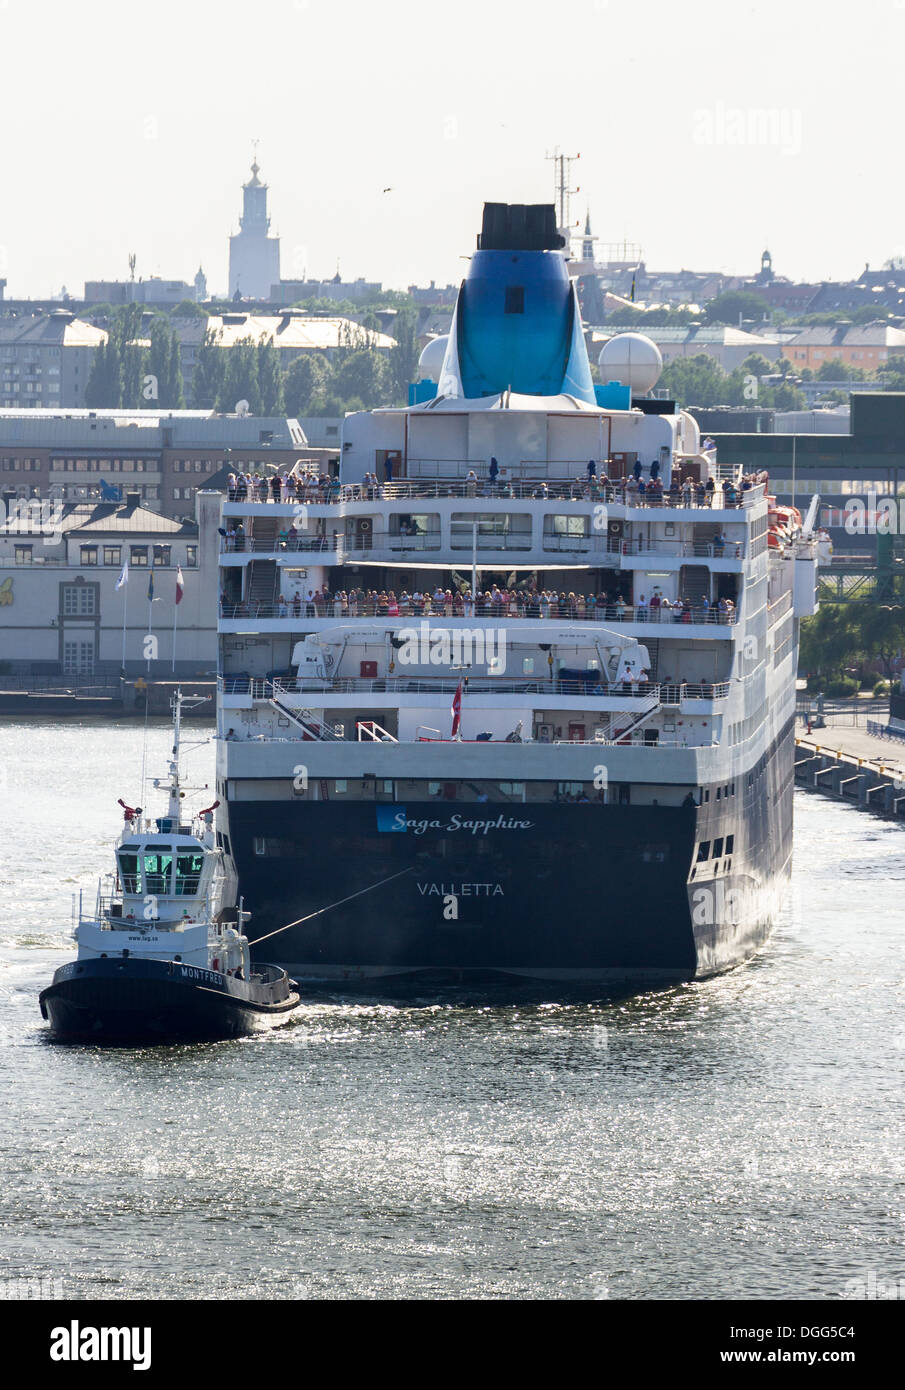 Bateau de croisière 'Saga Sapphire' tiré loin de cruise terminal par un remorqueur, à Stockholm en Suède. Banque D'Images